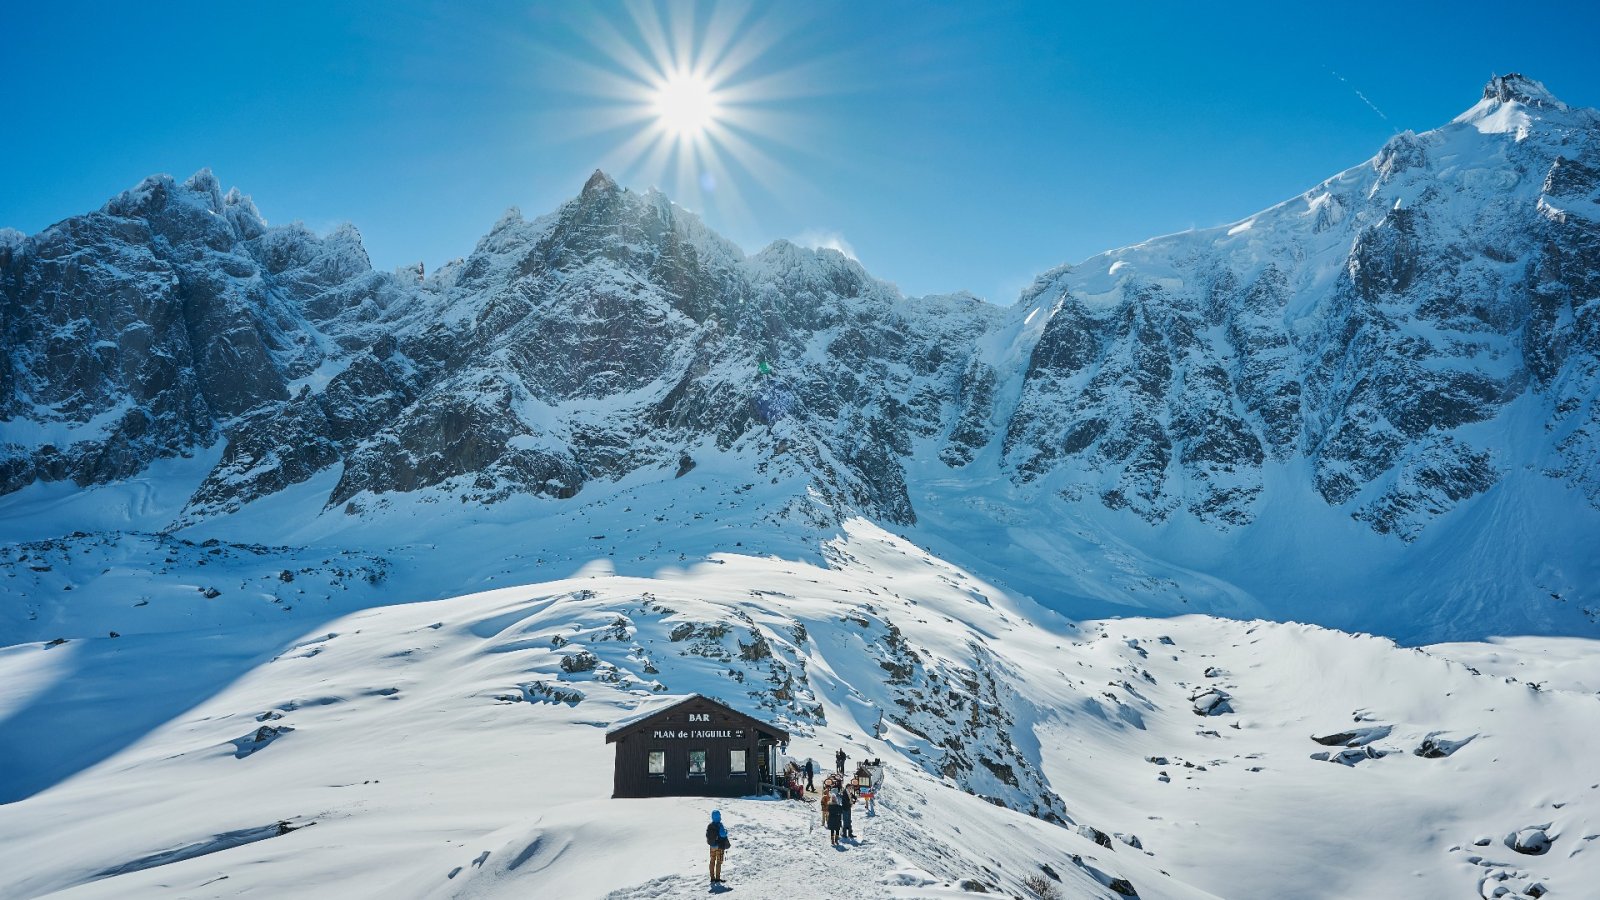 Dit zijn de 5 beste wintersportlocaties van 2023